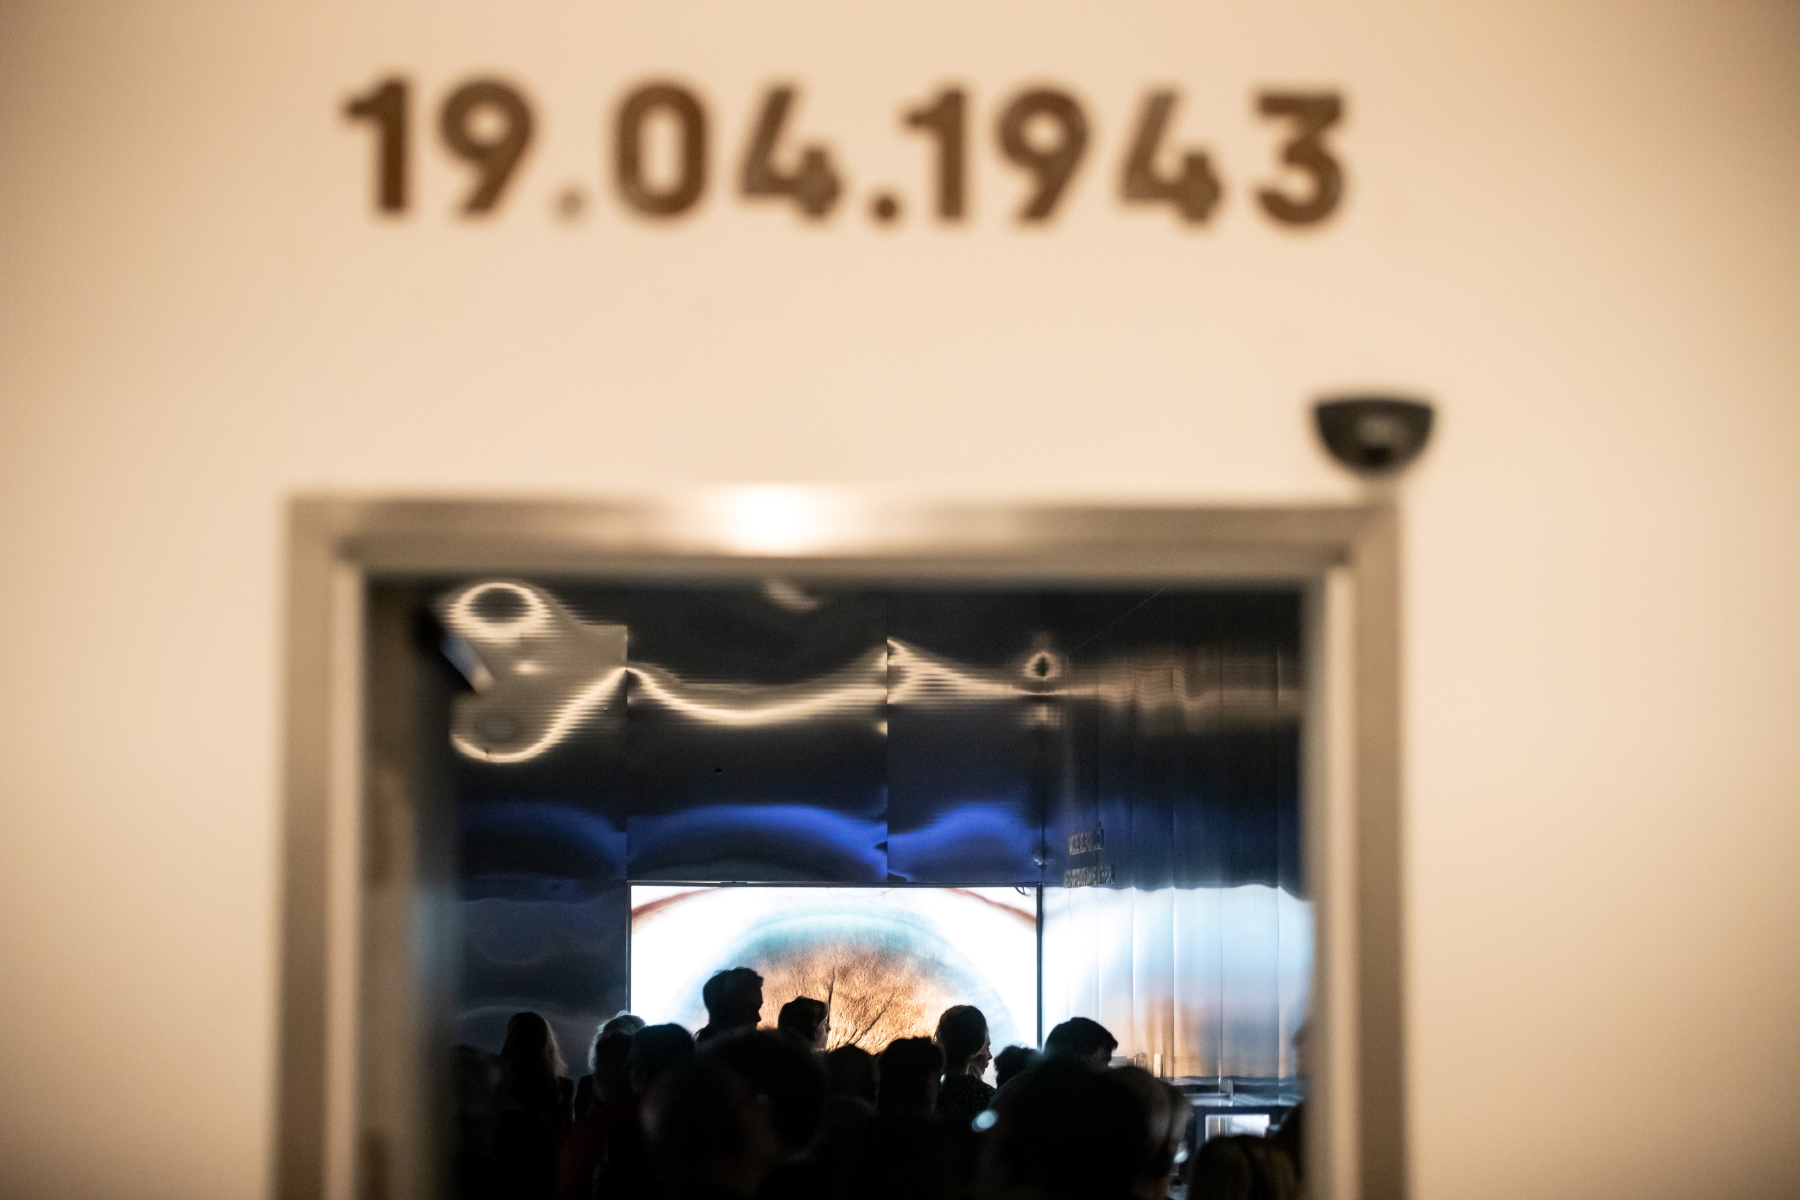 Wejście na wystawę "Wokół nas morze ognia". Nad nim data 19.04.1943. W tle zwiedzający podczas wernisażu.